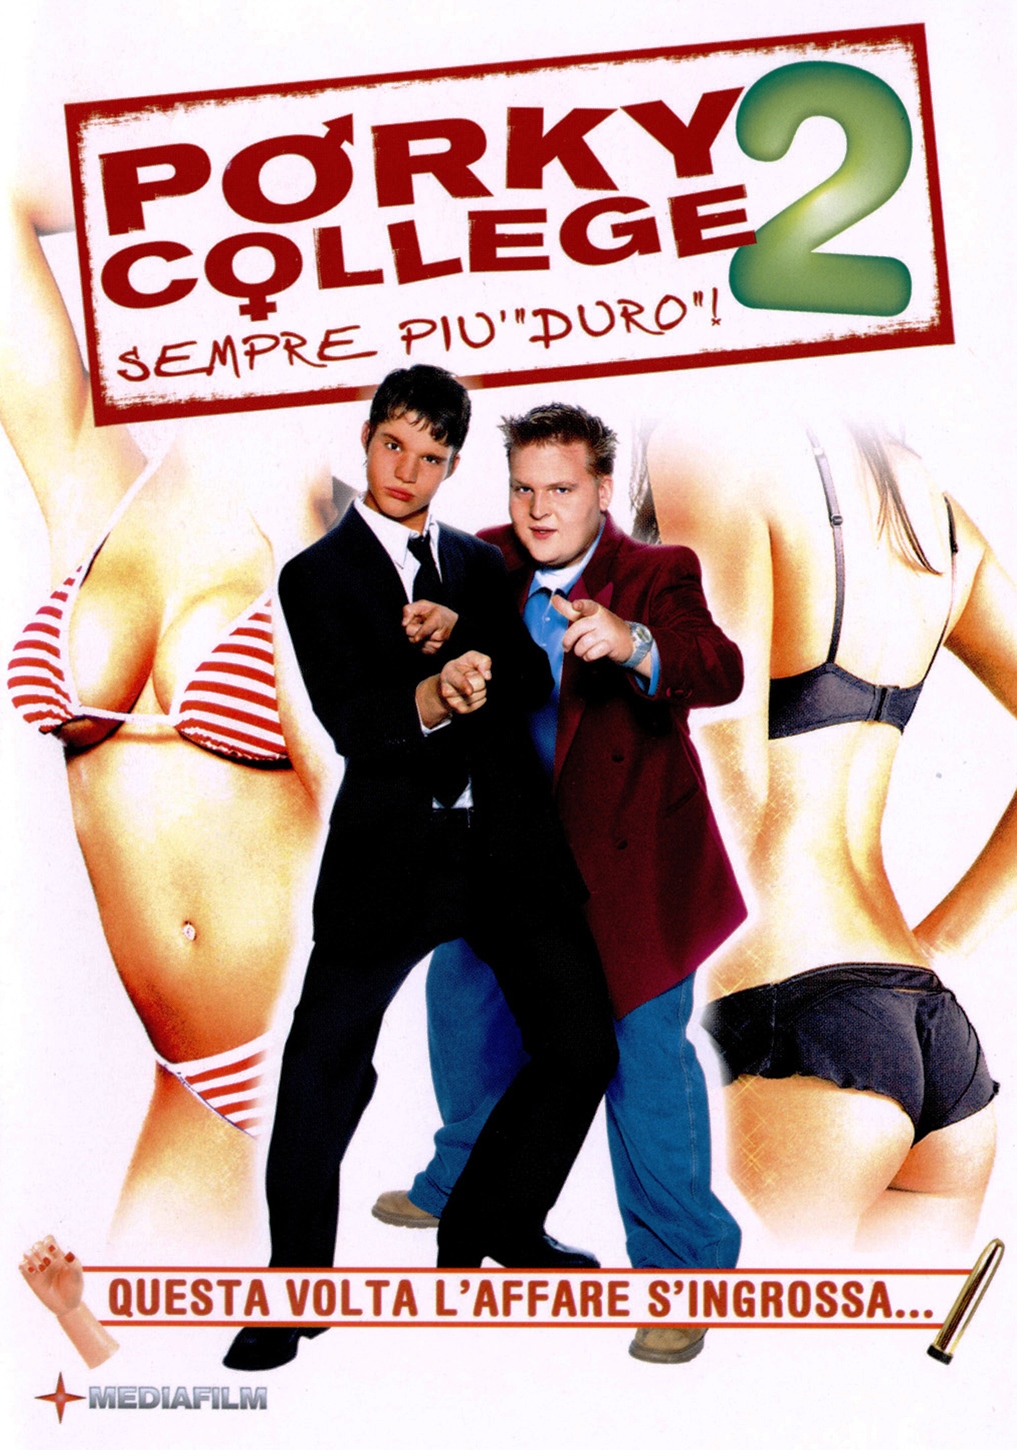 Porky College 2 – Sempre piu duro (2006)